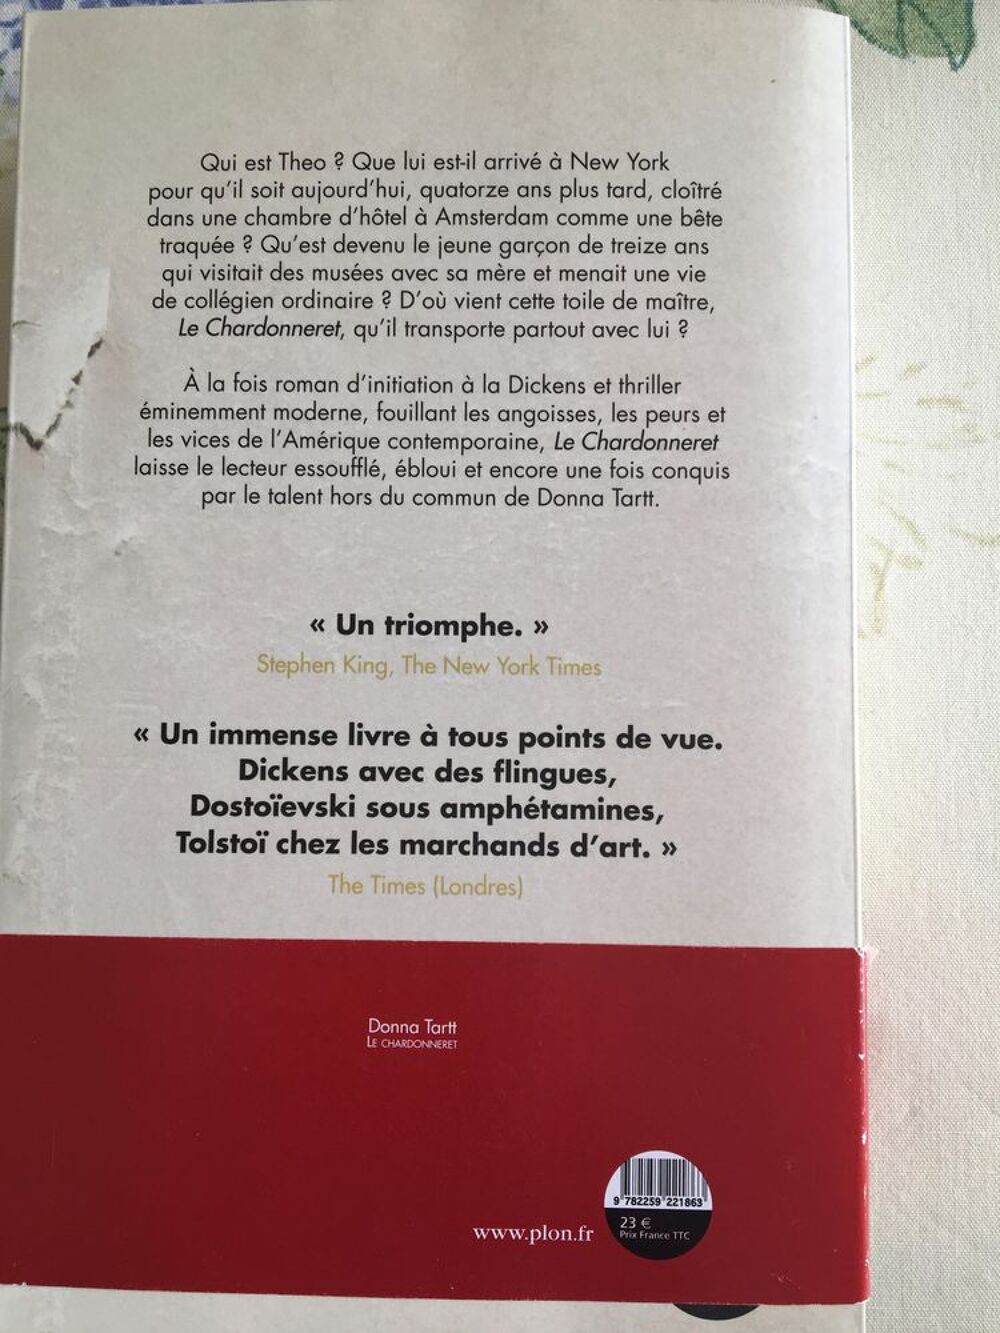 LIVRE DE DONNA TARTT : LE CHARDONNET
Maroquinerie